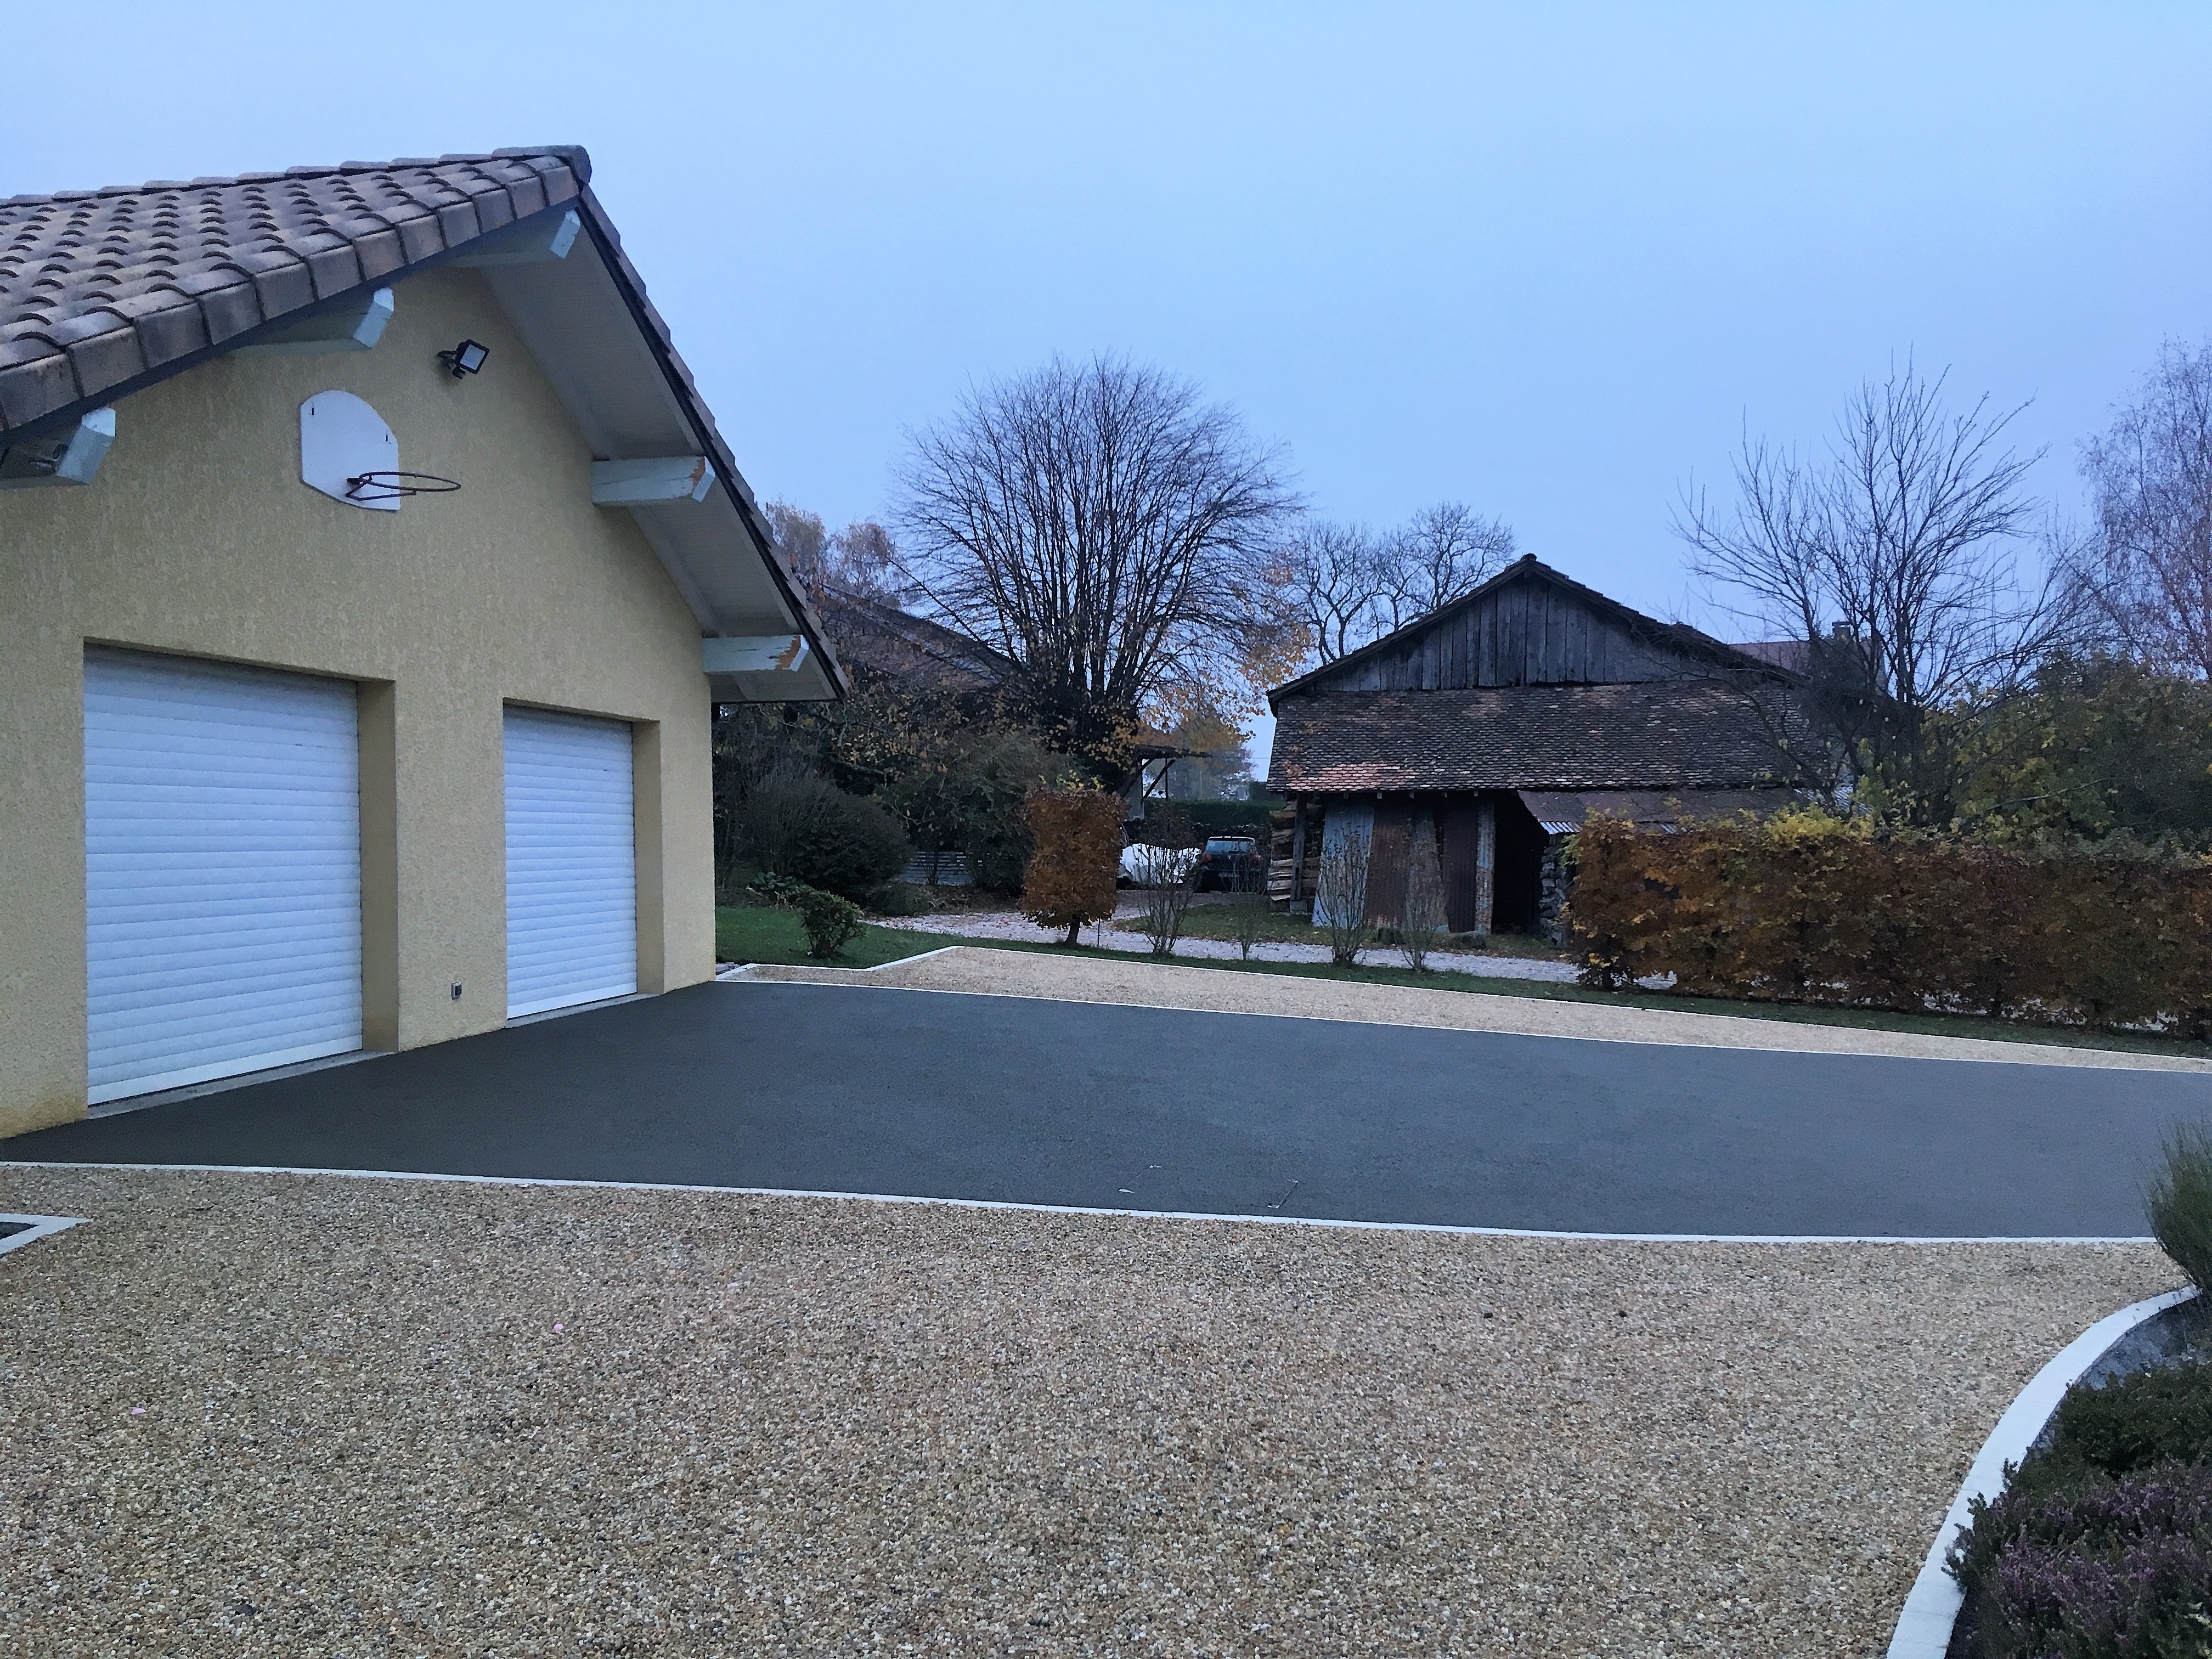 Ralisation Alle de garage en Alvostar et Bton Poreux - Entreprise Tardy-Thivent  Ballaison conue le 12/02/2019